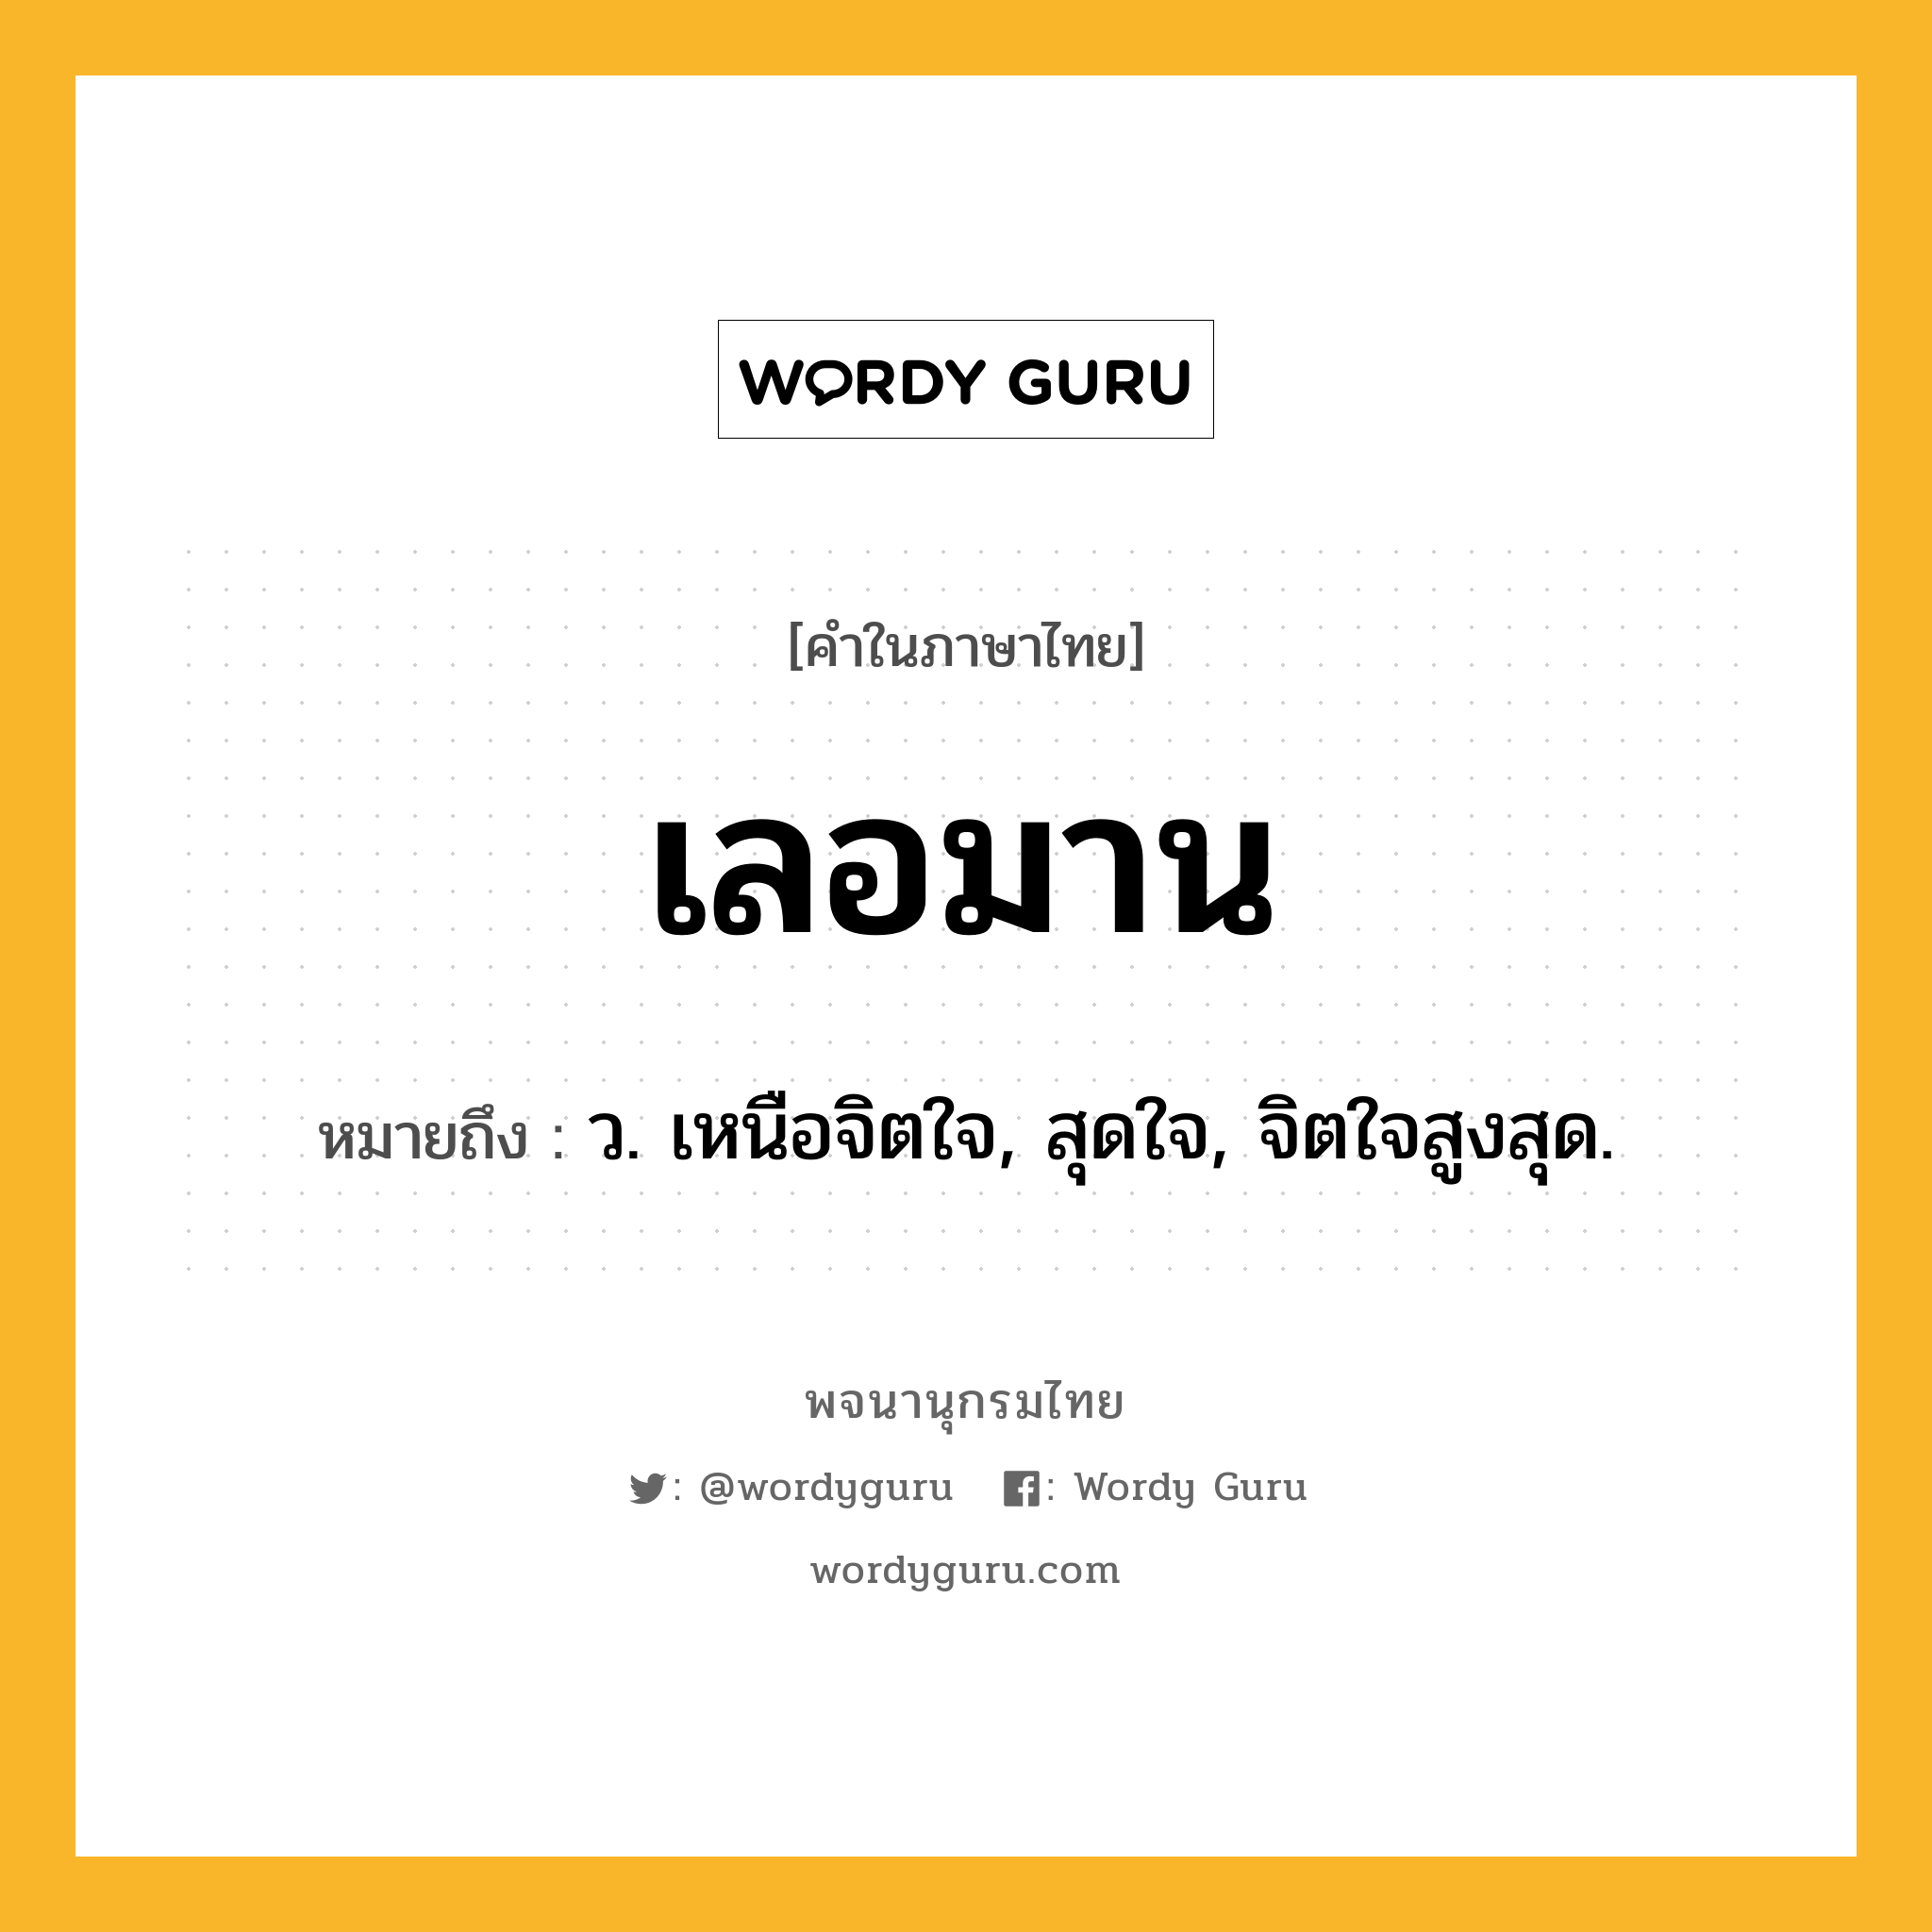 เลอมาน ความหมาย หมายถึงอะไร?, คำในภาษาไทย เลอมาน หมายถึง ว. เหนือจิตใจ, สุดใจ, จิตใจสูงสุด.